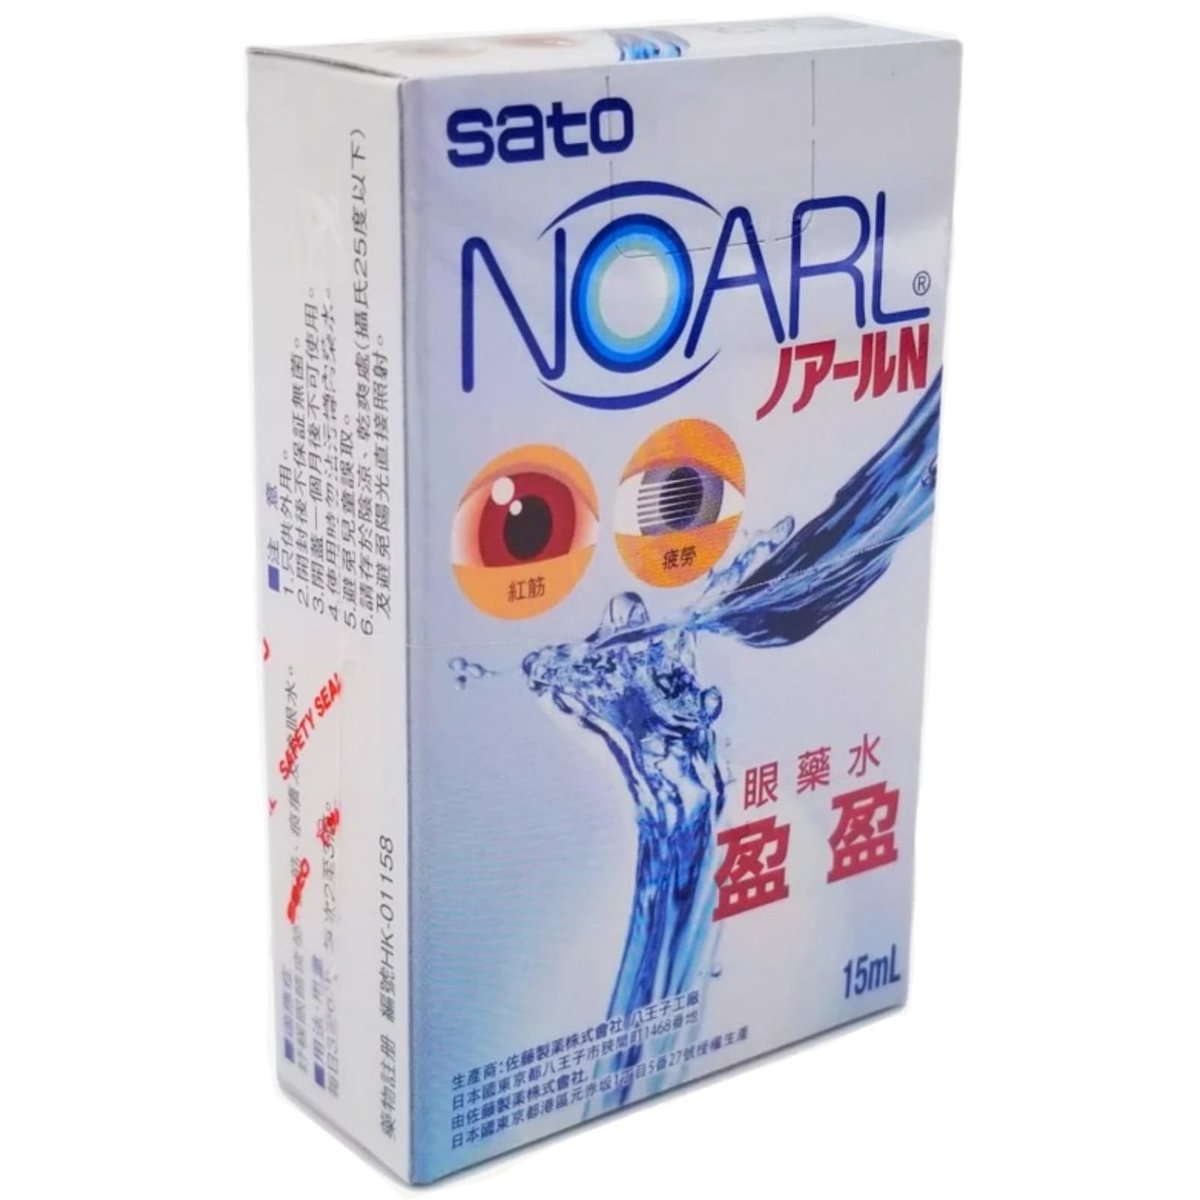 Noarl eye drops 15ml (4987316041773)